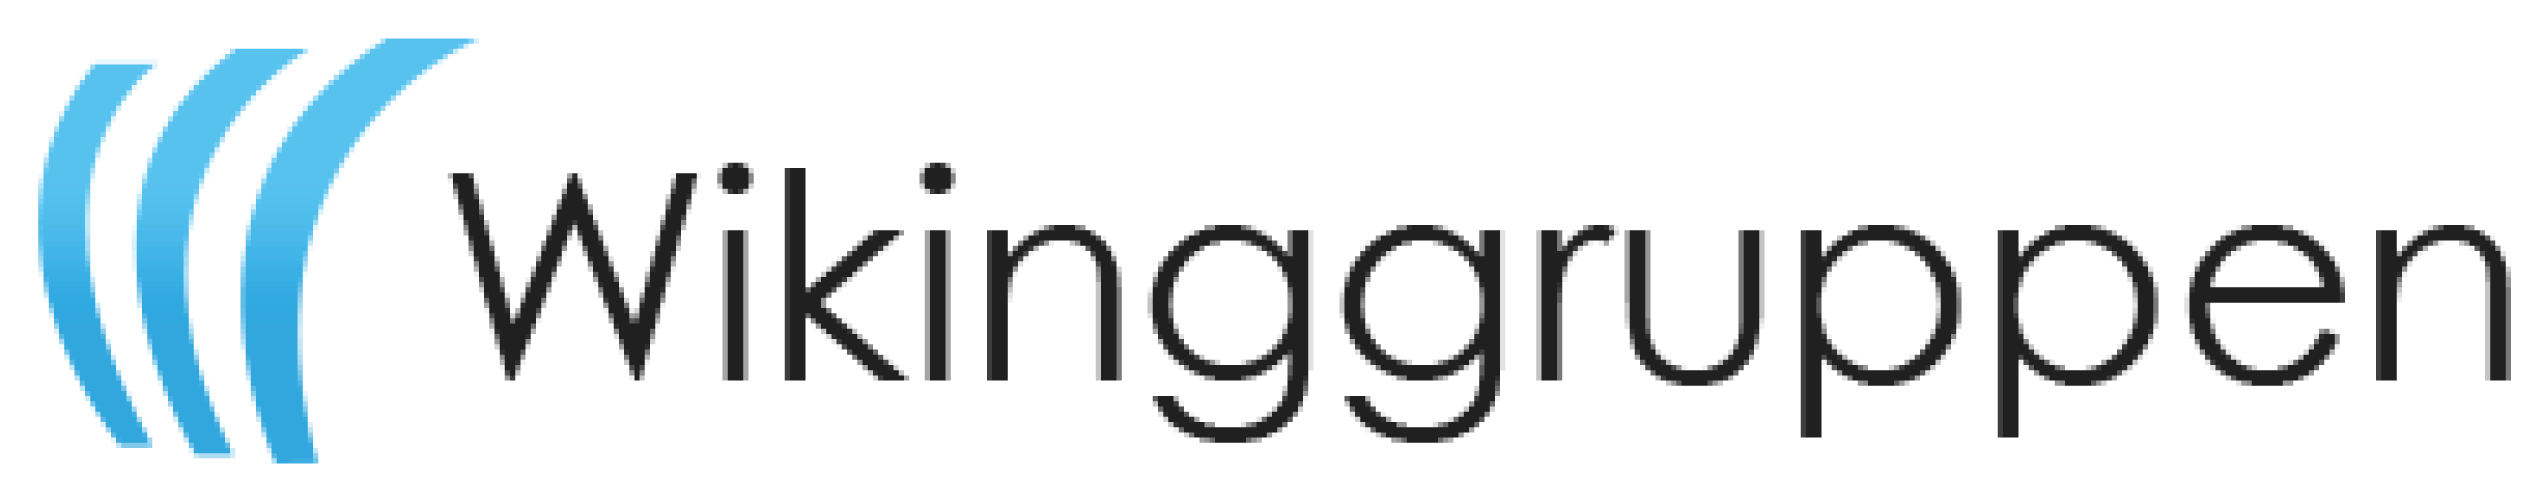 Wikinggruppen logo